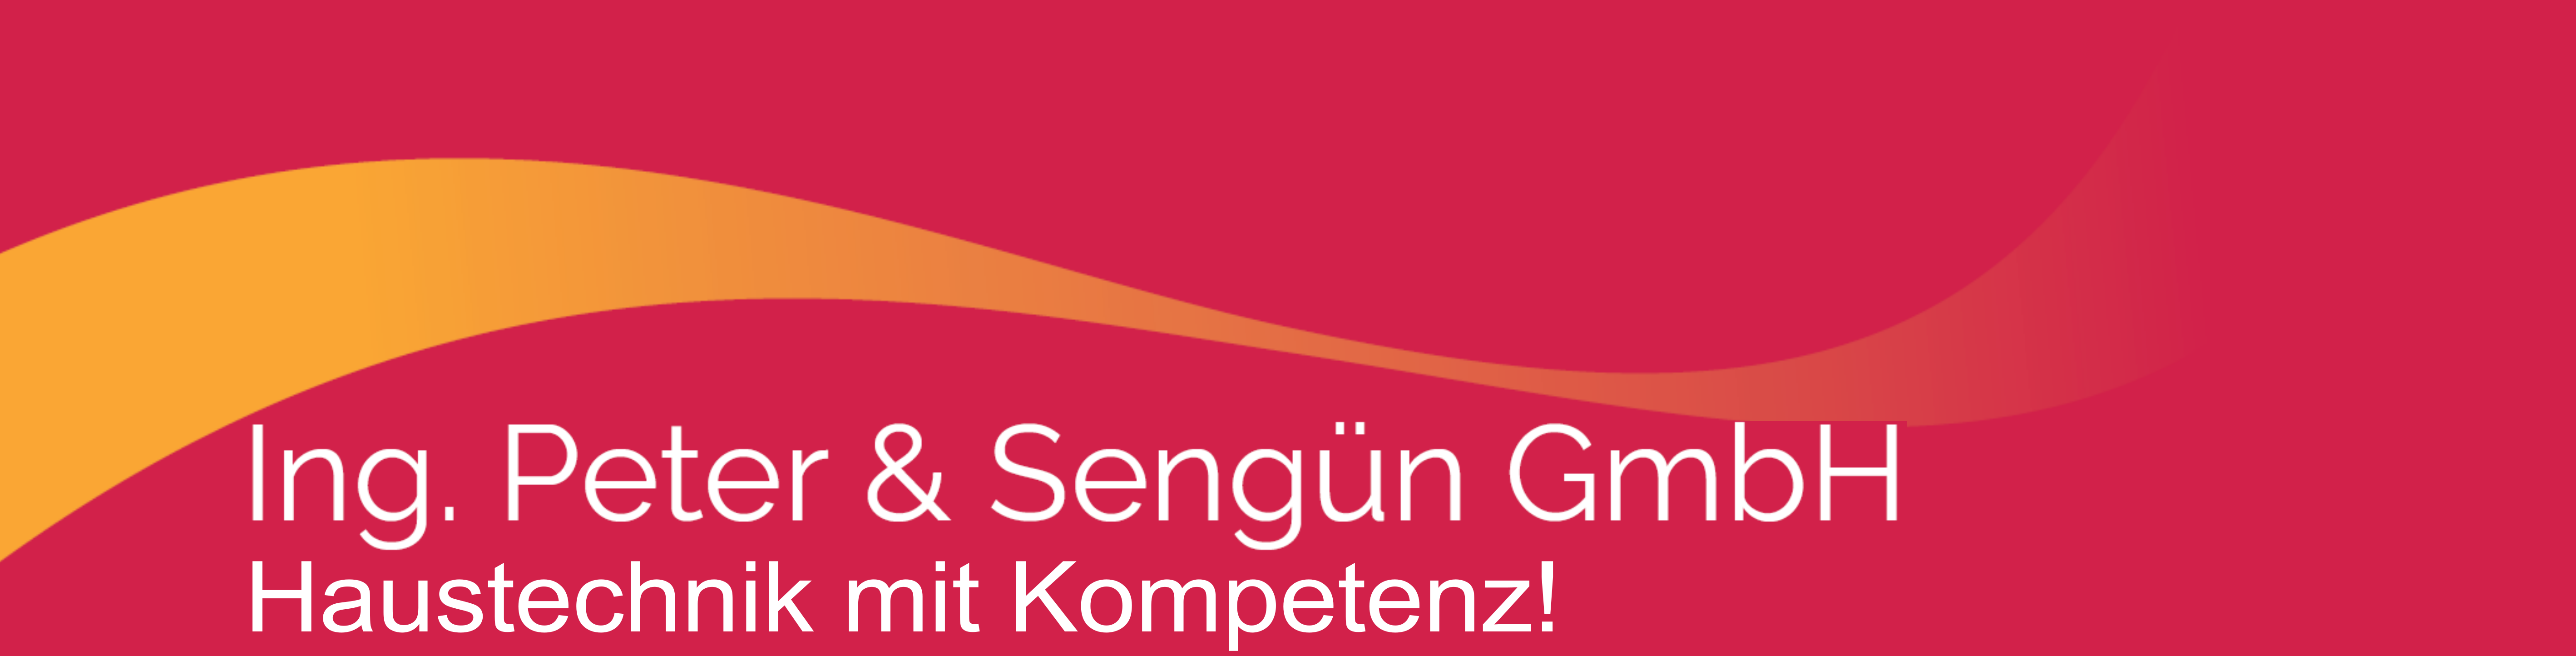 Ing. Peter & Sengüng GmbH